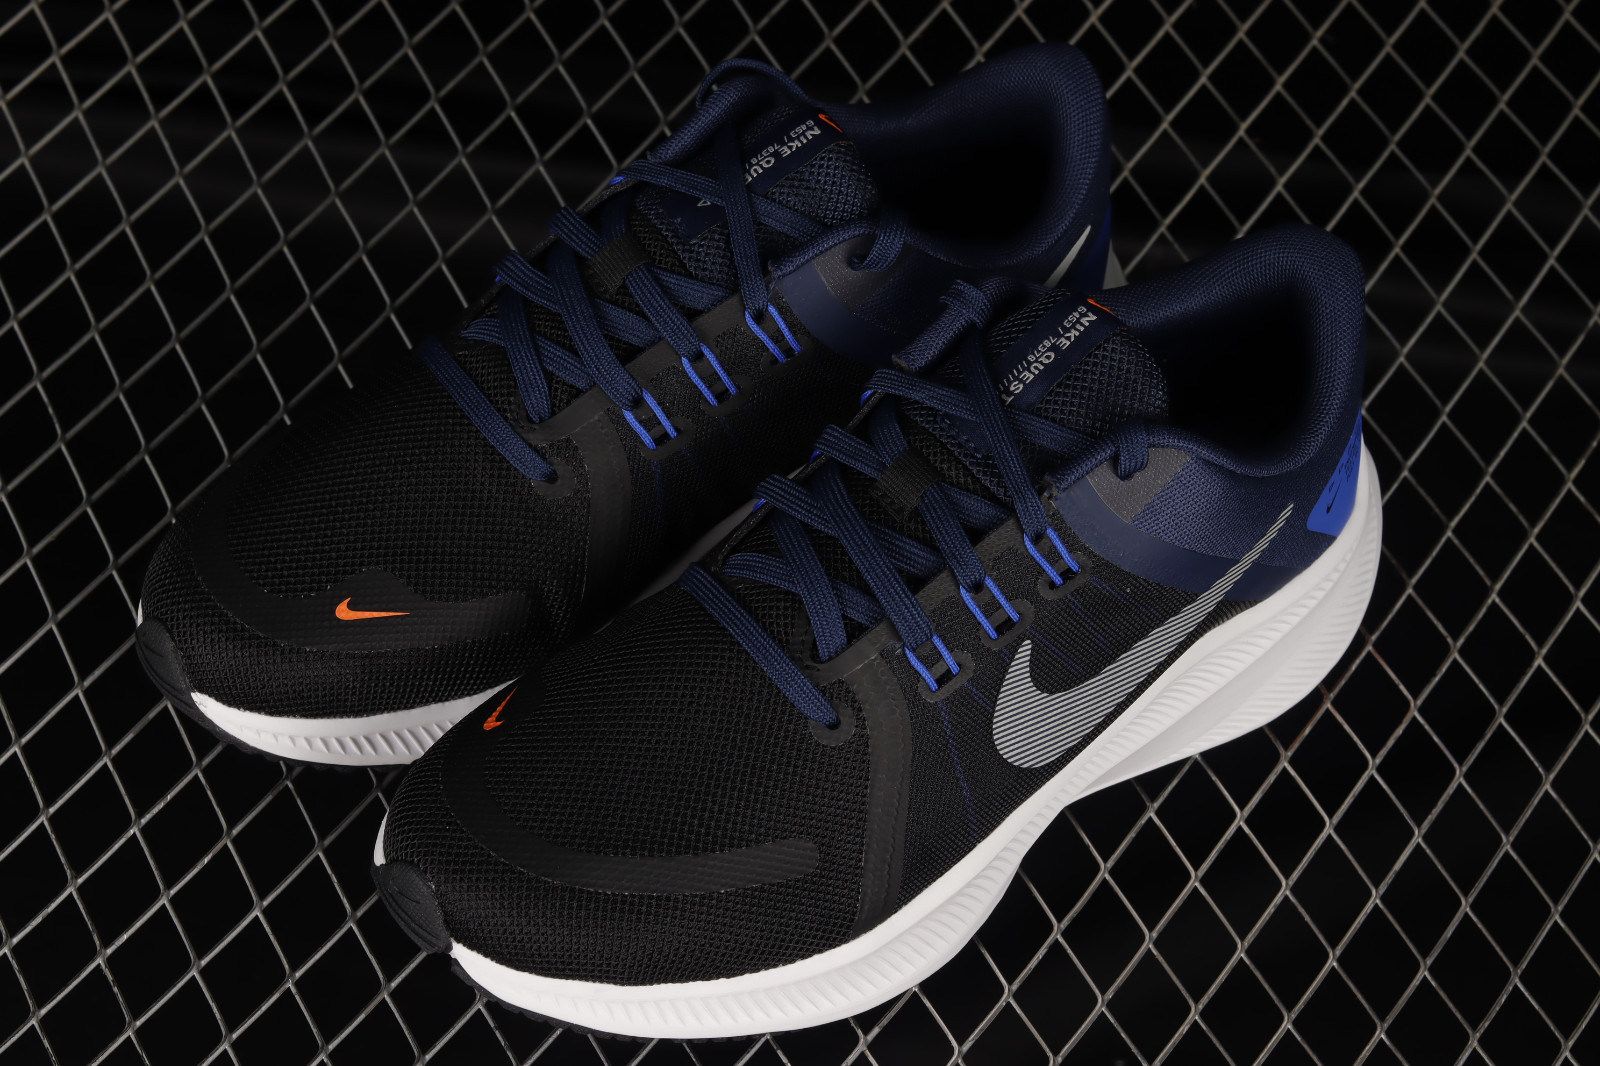 004 - Nike 4 Thunder Blue Black Grey Light Photo Blue DA1105 nike training shoes white size 10 inches - GmarShops